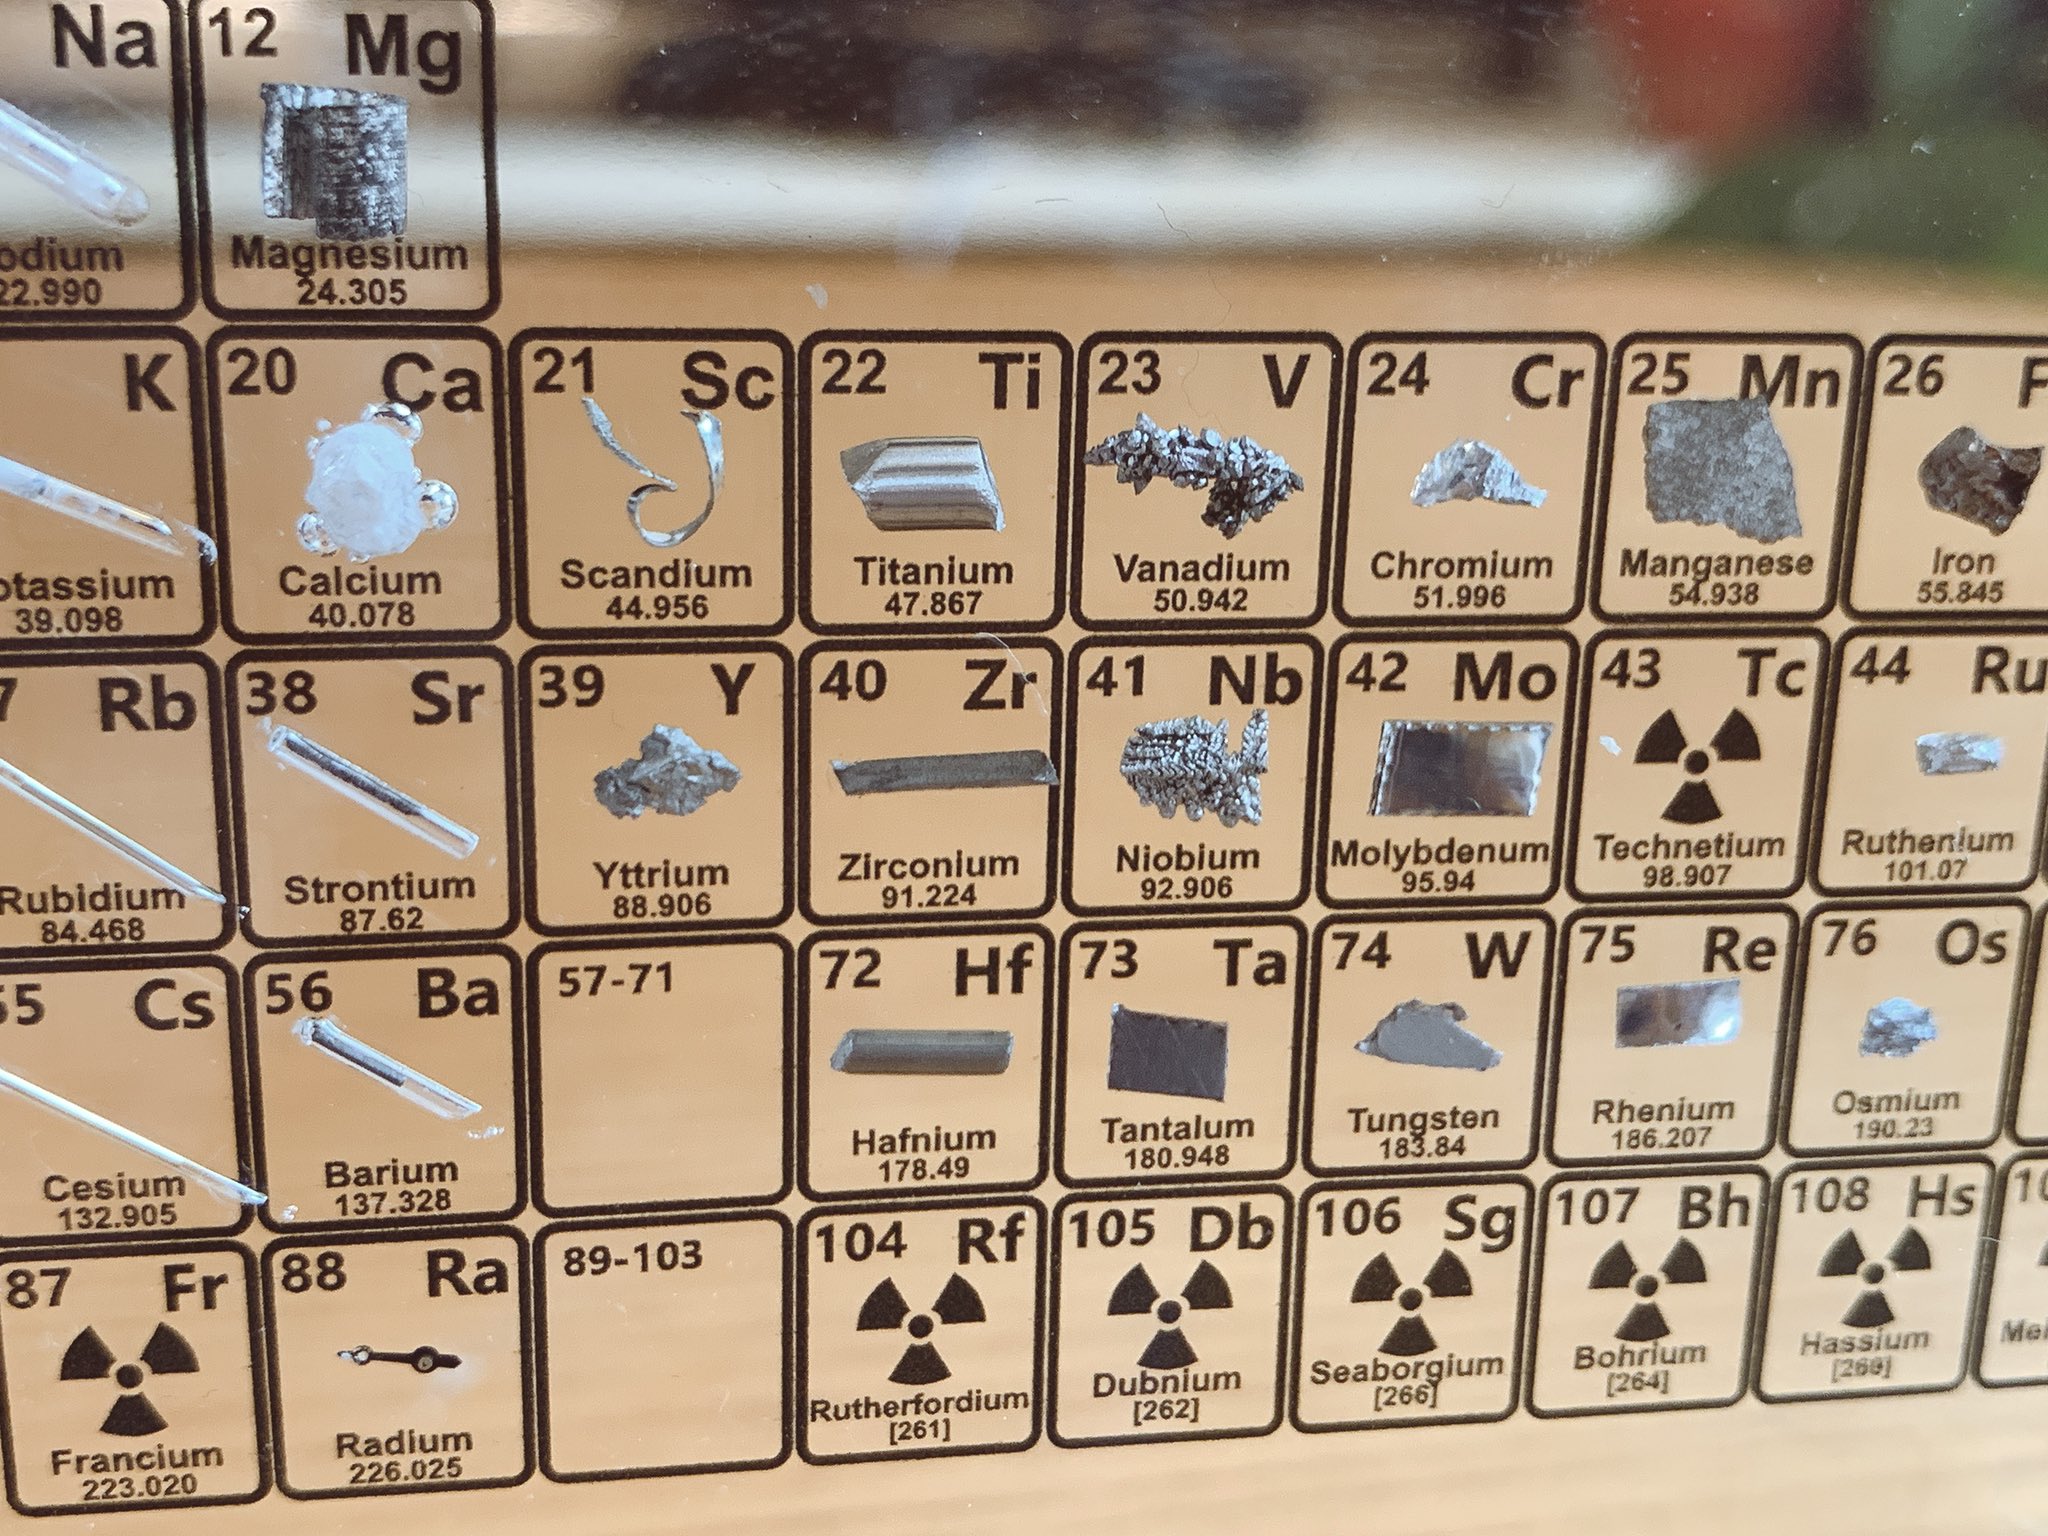 タンサンあさと 注文していたheritageの実物元素周期表が届いた 118の元素のうち 85の実際のサンプルが収録されている ヤバい放射線物質以外は大体入ってる 放射線物質のラジウムは昔の時計の針を使用しているみたい いろんな元素を所有しているという